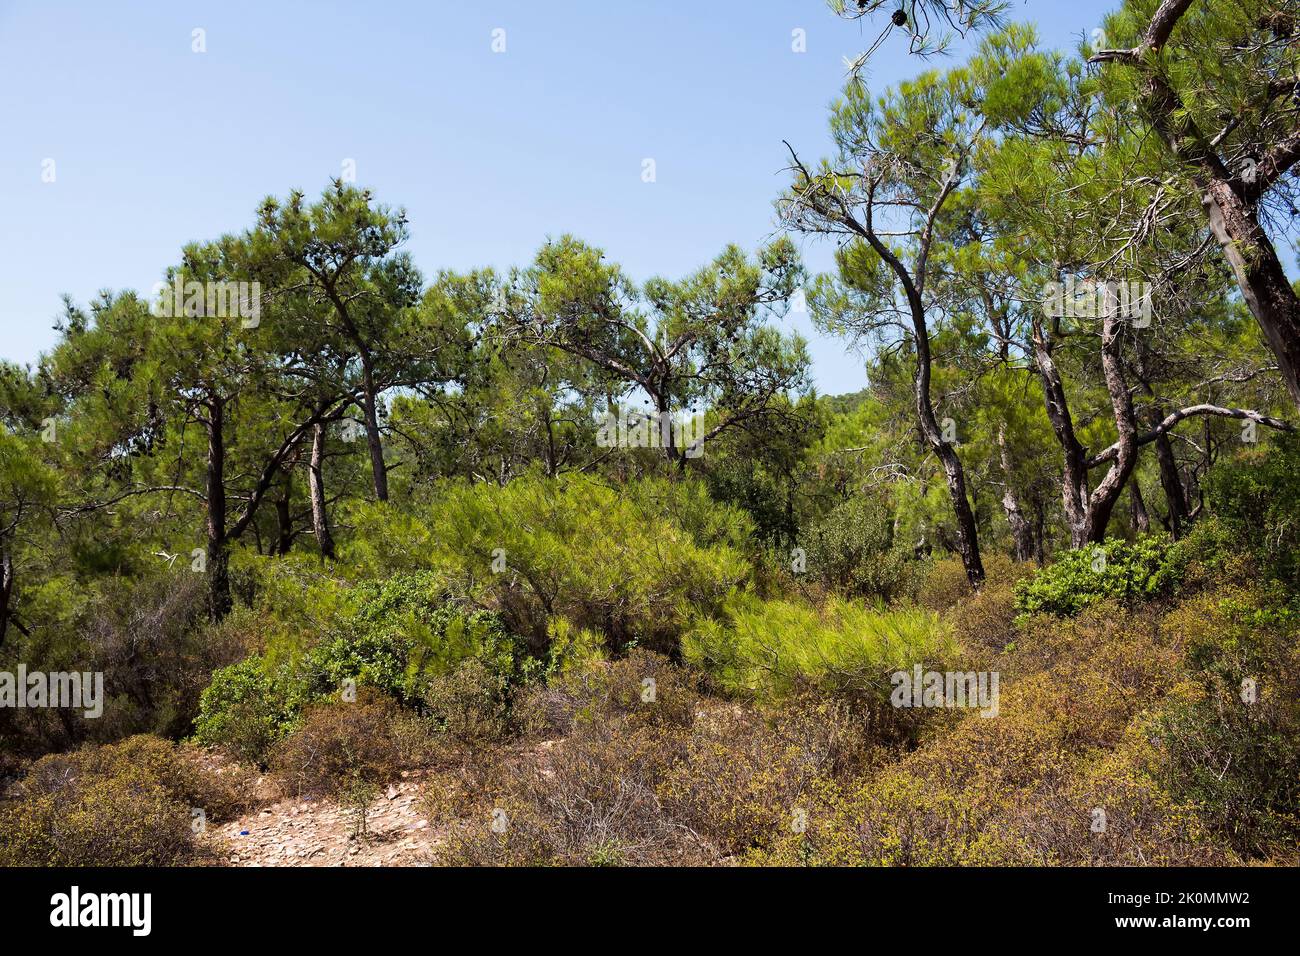 Vista di pini chiamati Pinus brutia e piante selvatiche catturate nella costa egea della Turchia. E' una giornata estiva di sole. Foto Stock